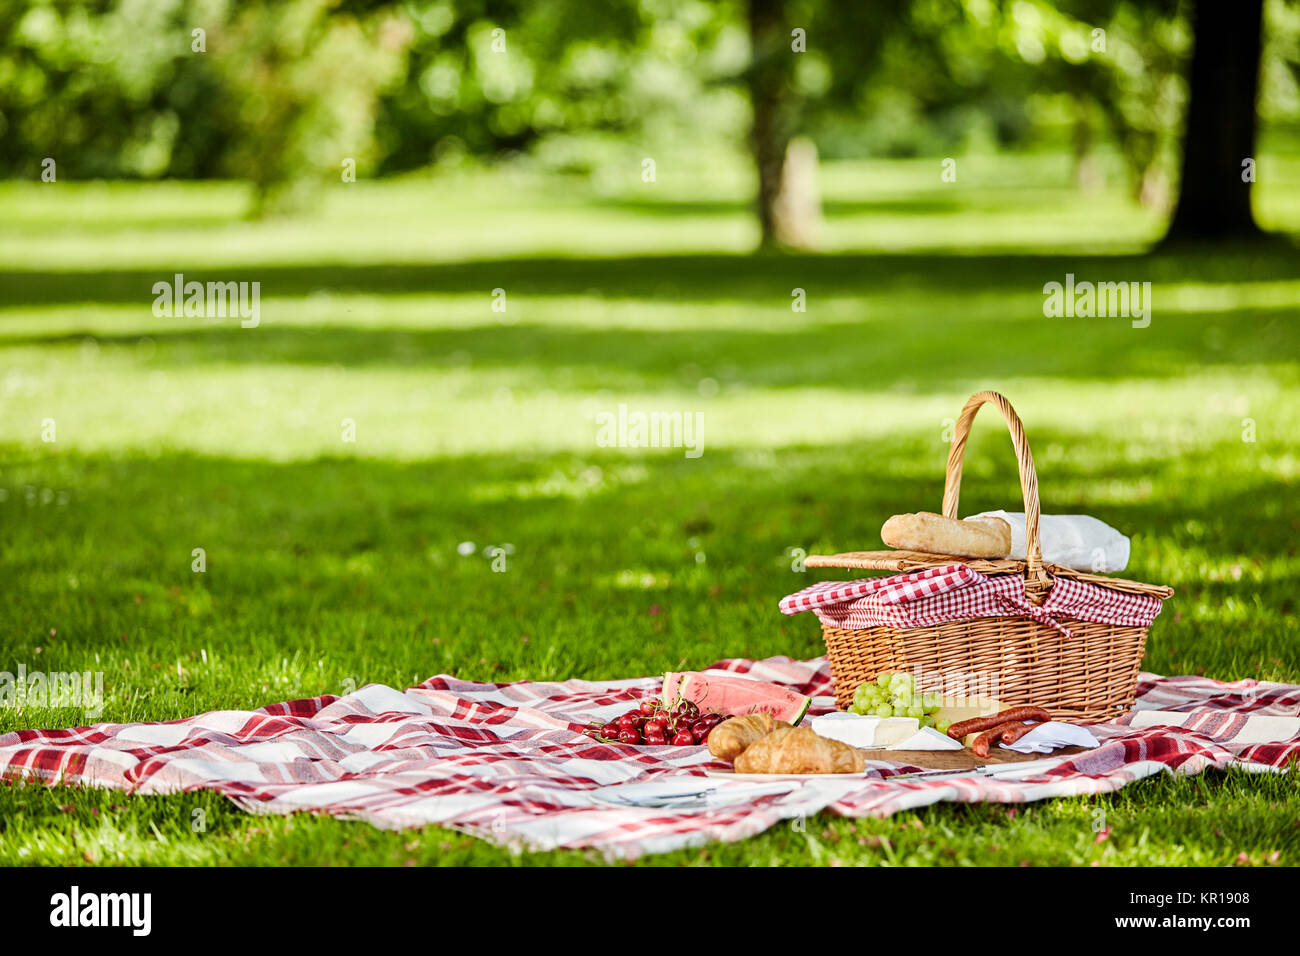 Leckeres Picknick mit frischem Obst, Brot, würzige Wurst und Käse verteilen sich auf einer rot-weiß karierte Tuch in einem üppigen Spring Park Stockfoto